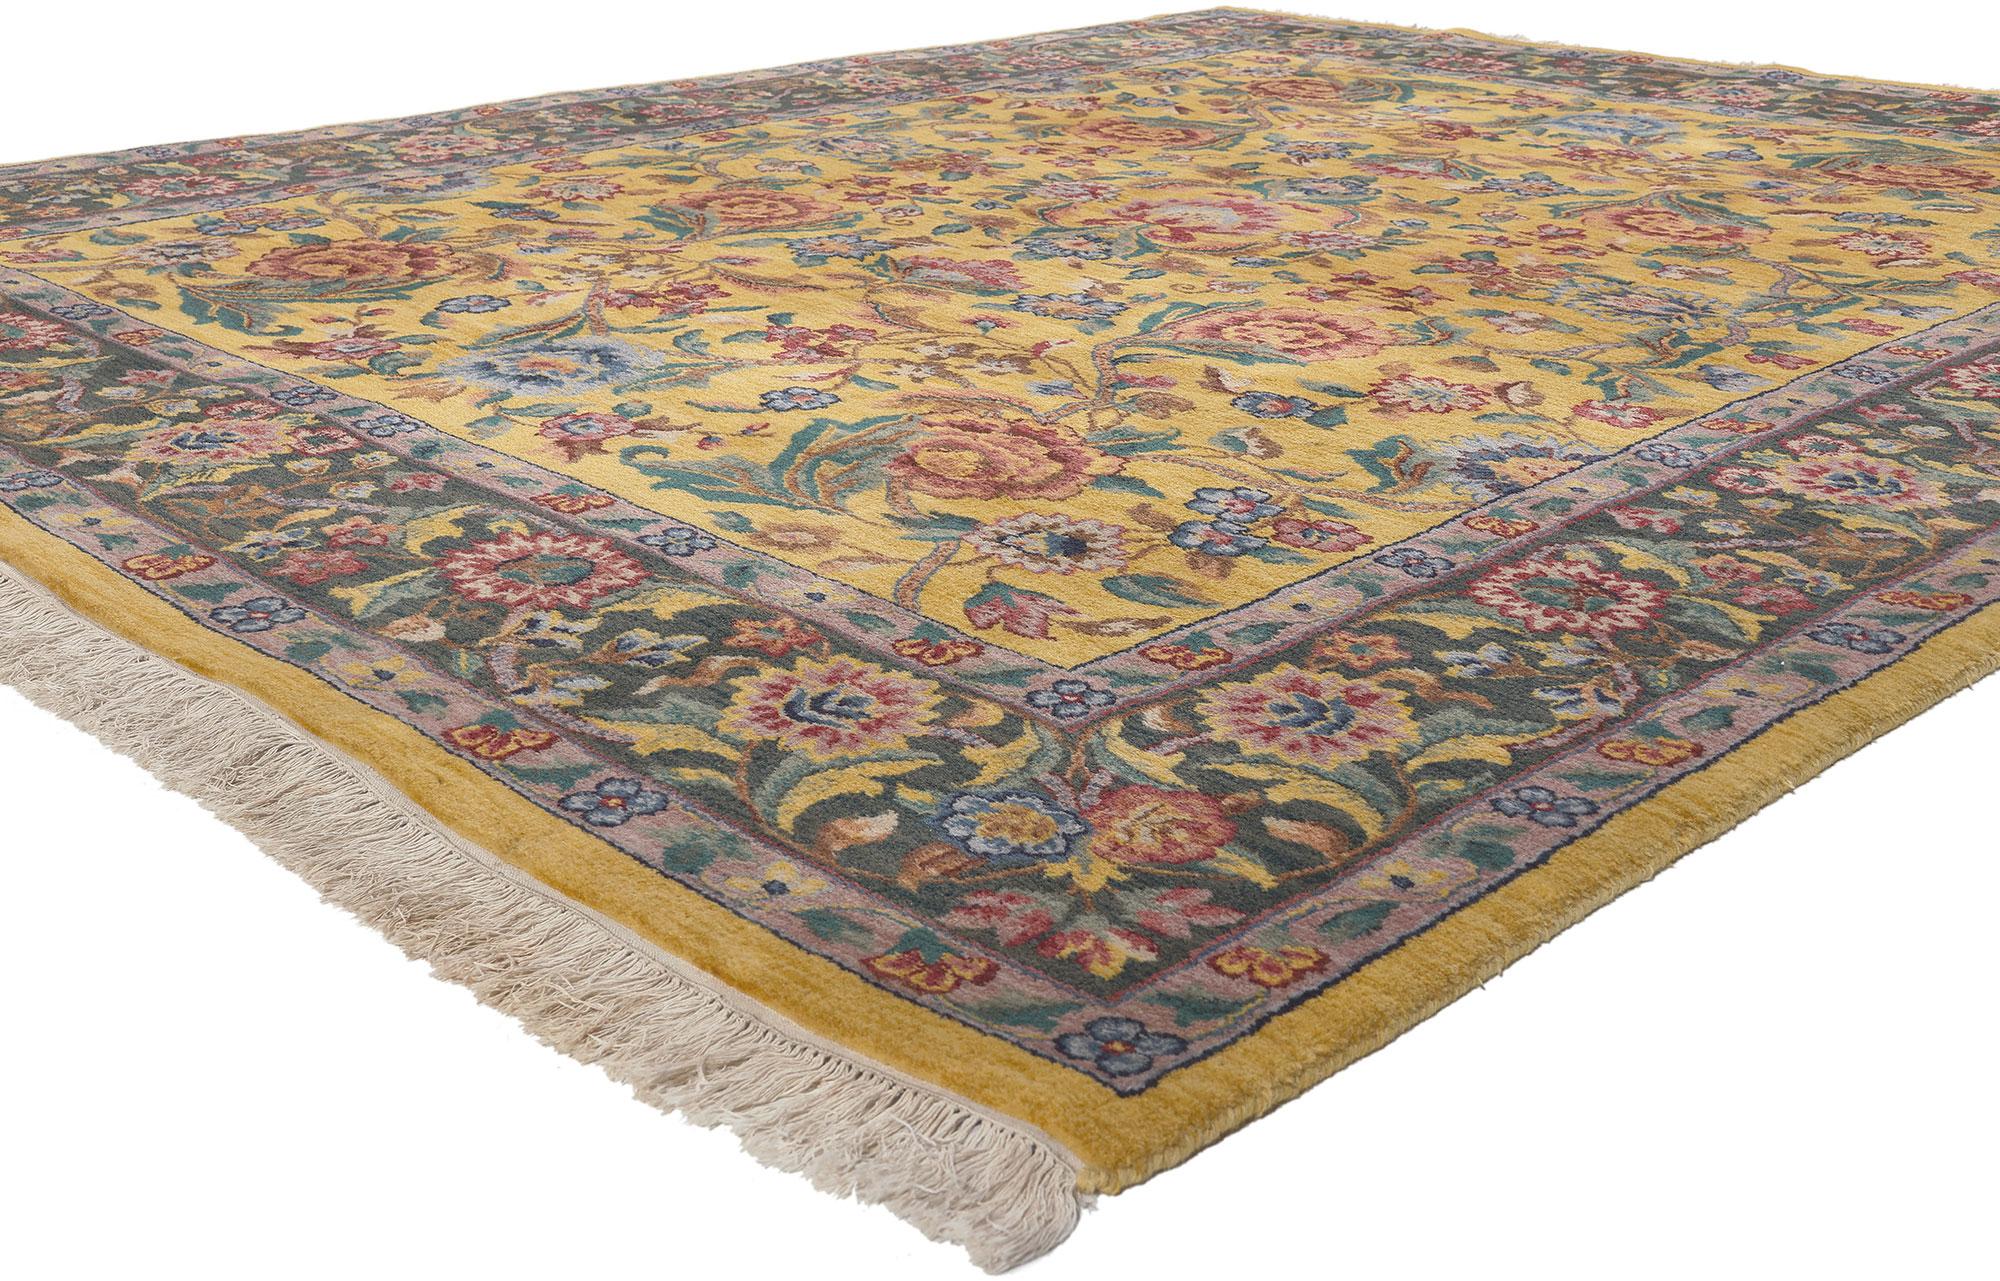 74959 Vintage Indian Tabriz Teppich, 07'10 X 09'09. Indische Täbris-Teppiche sind exquisite handgefertigte Teppiche, die von der berühmten persischen Täbris-Tradition inspiriert sind und typischerweise in Indien hergestellt werden. Diese Teppiche